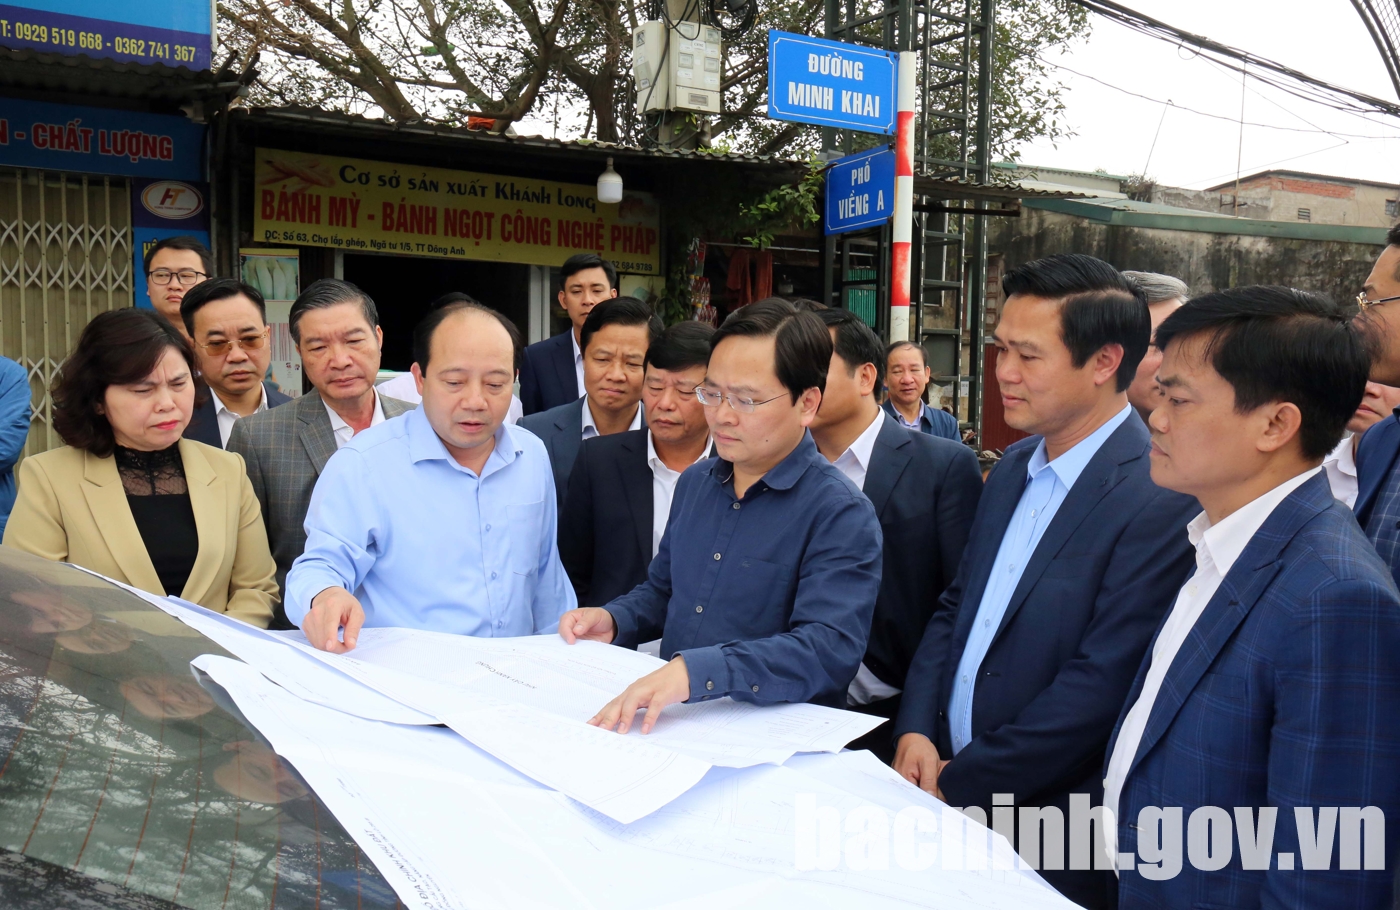 Bắc Ninh: Bí thư Tỉnh ủy kiểm tra thực địa và gỡ vướng dự án đầu tư xây dựng đường tỉnh 295B- Ảnh 1.